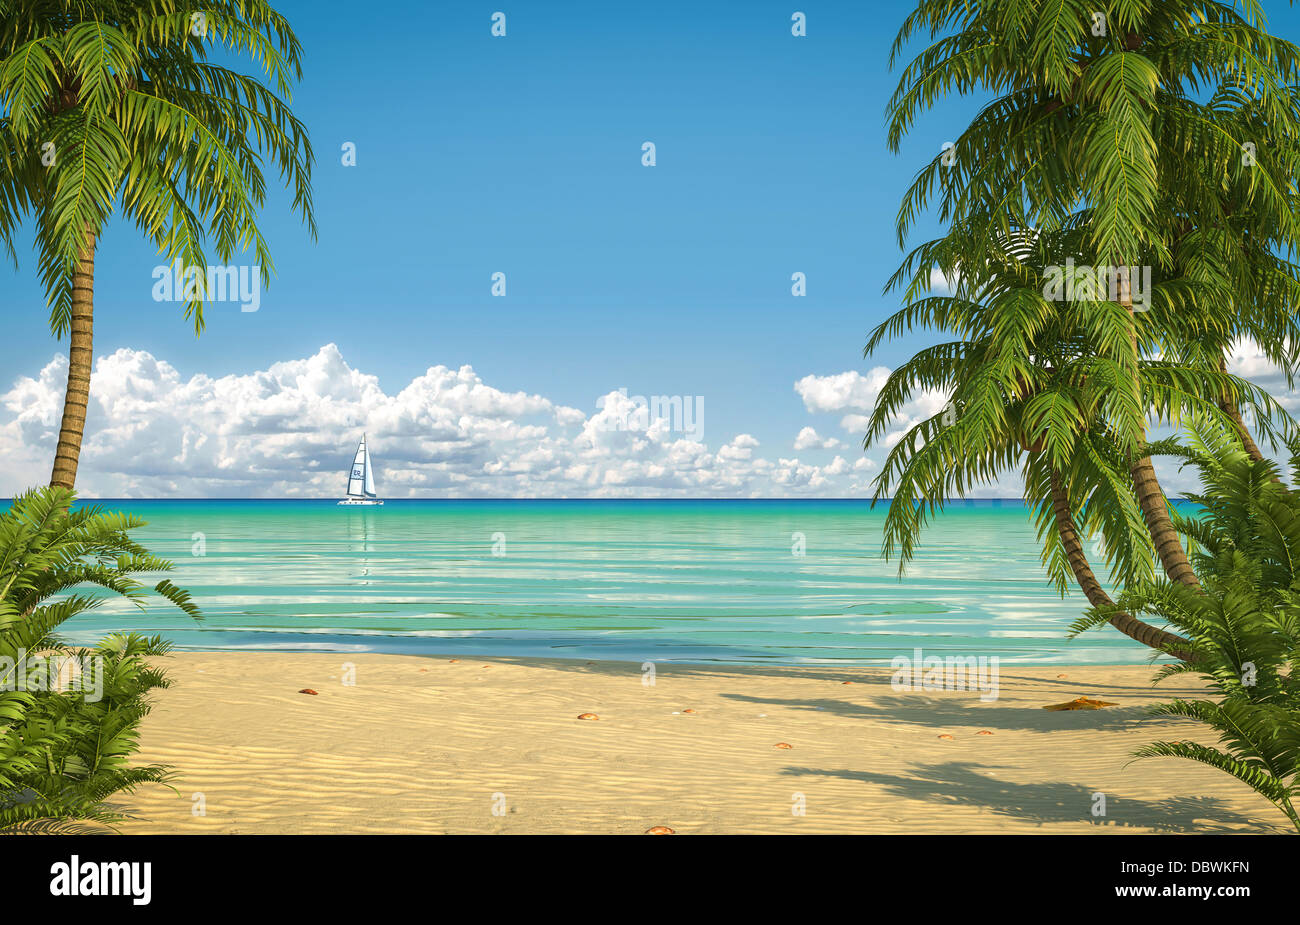 Vue frontale d'une plage des Caraïbes vide with copy space Banque D'Images